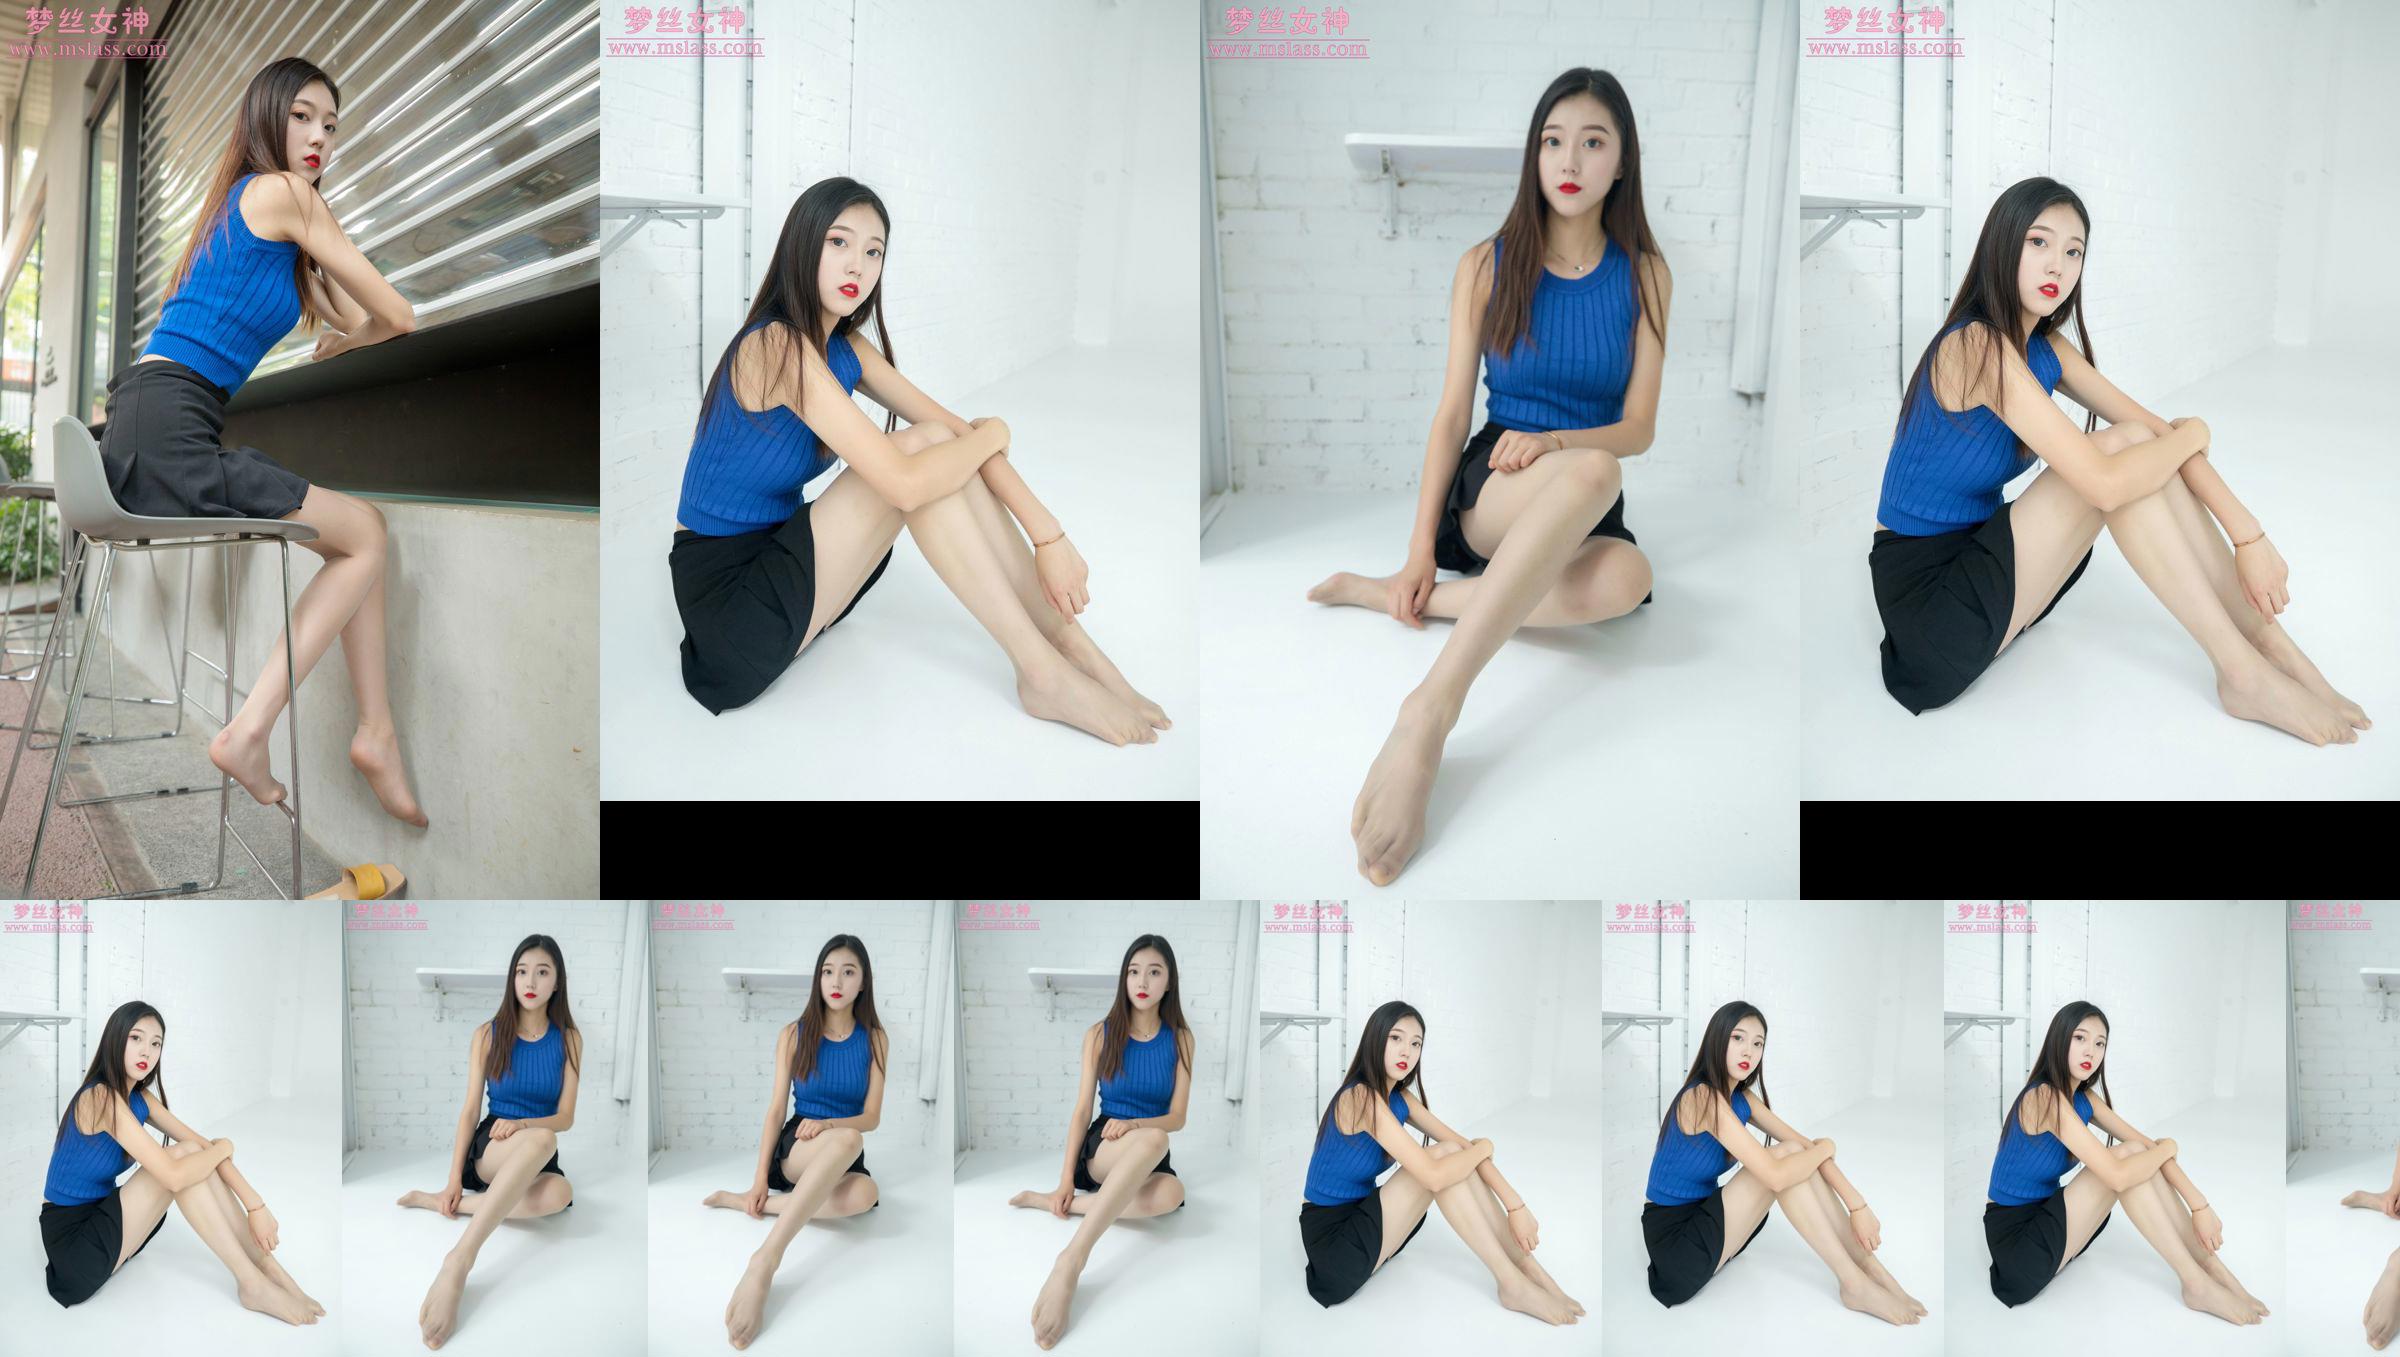 [MSLASS] Shu Lei Art Space Чулки Красивые ноги No.ad0f9e Страница 16